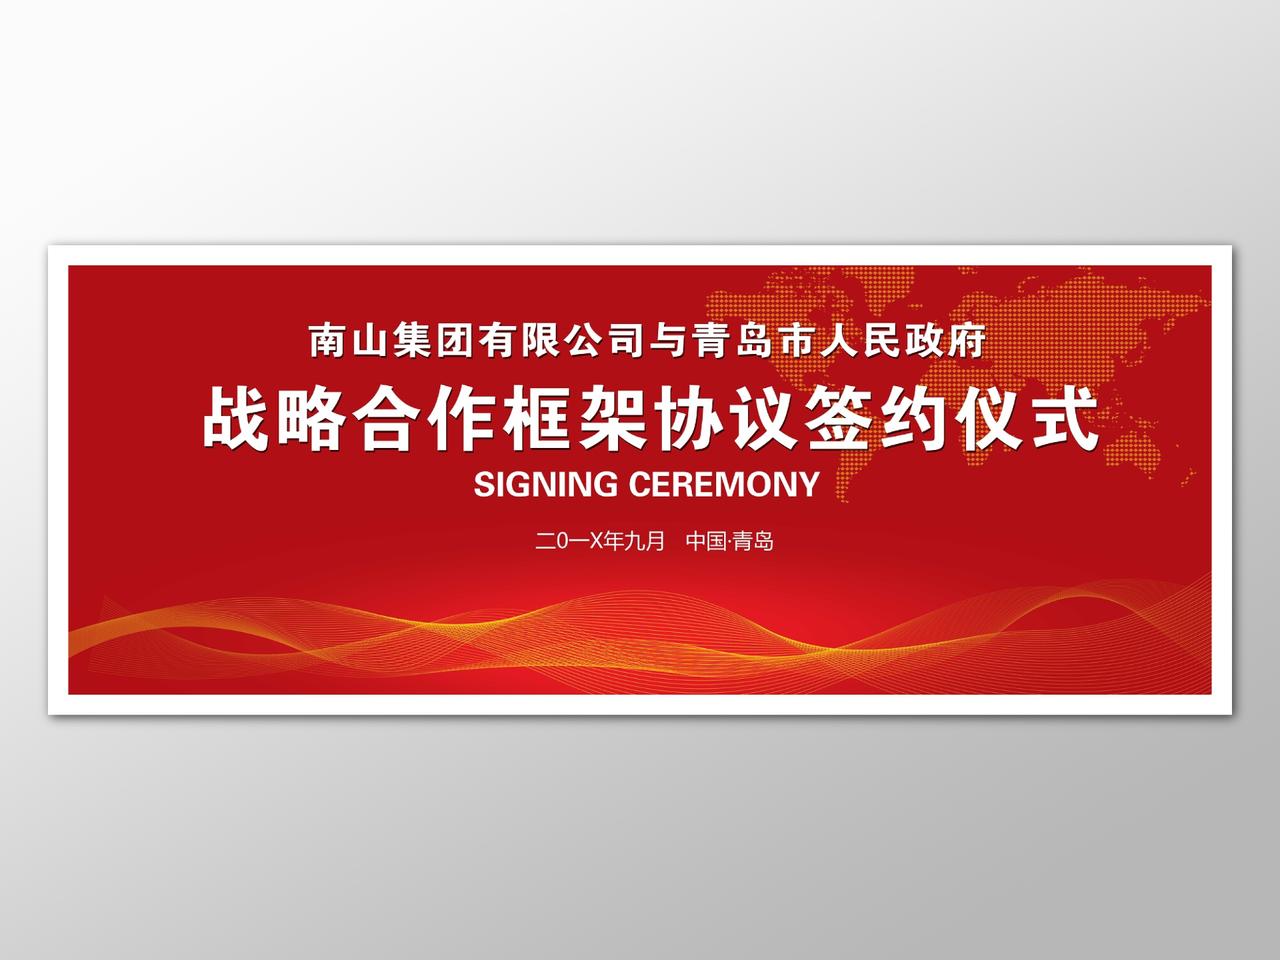 战略合作框架协议签约仪式背景红色大气喜庆海报模板